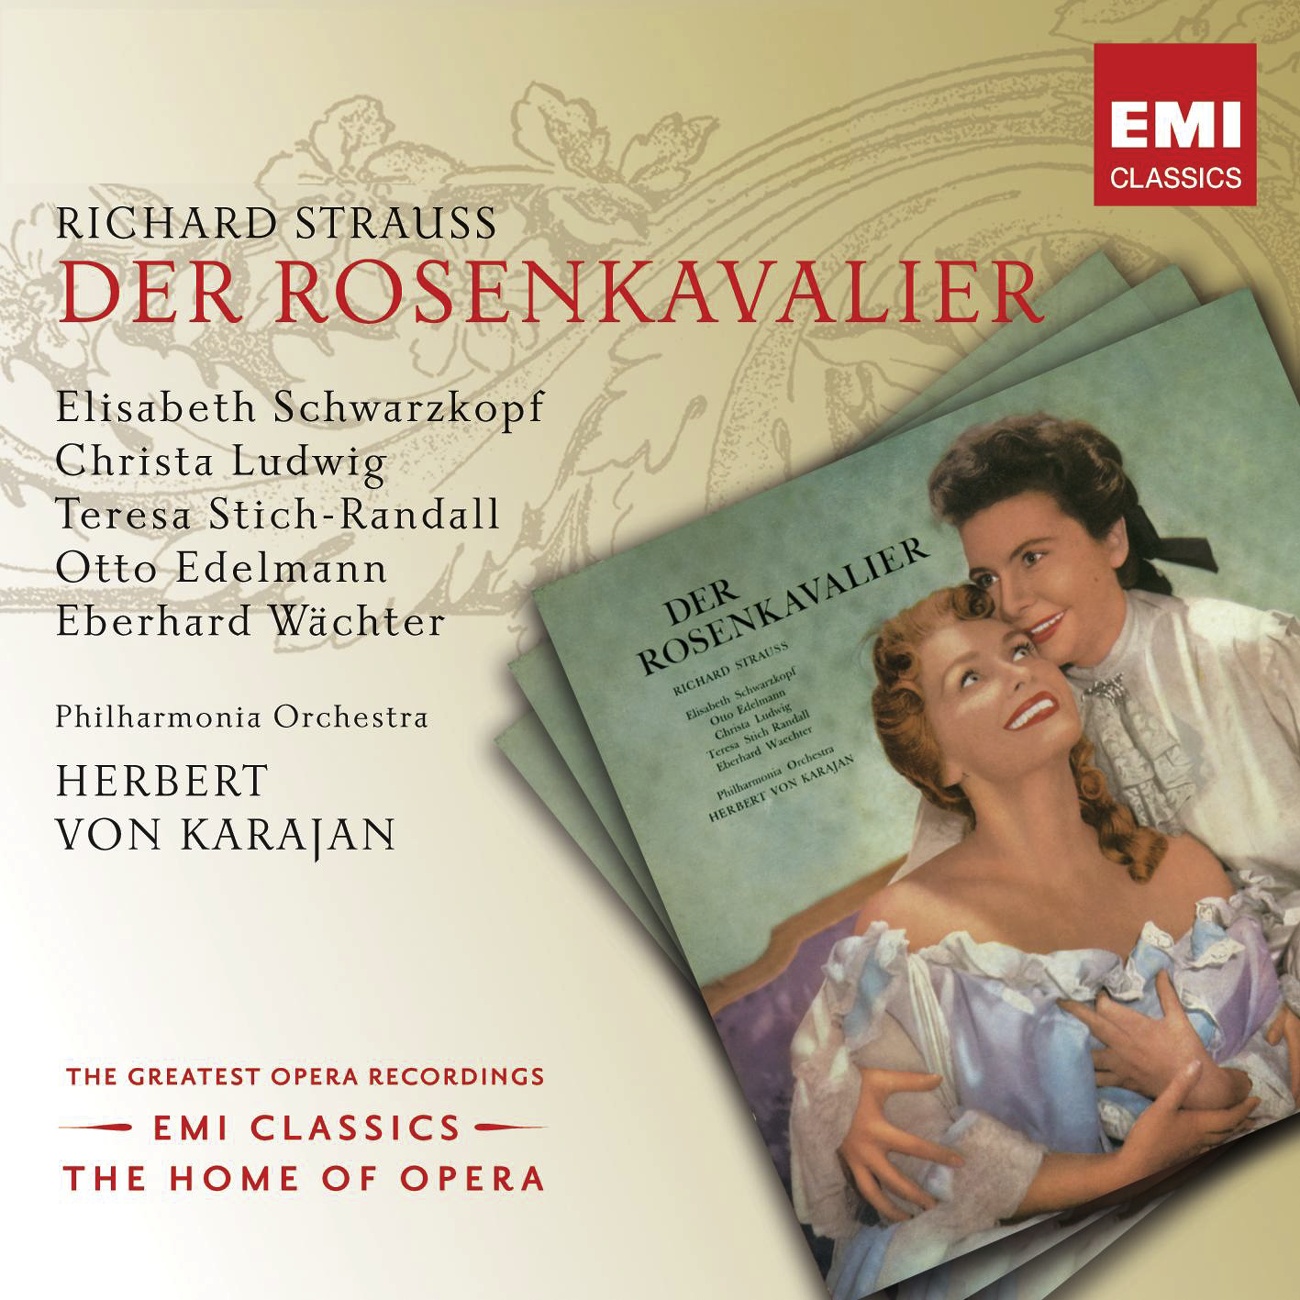 Der Rosenkavalier (2001 Digital Remaster), Act II: In dieser feierlichen Stunde der Prüfung (Sophie/Marianne/Lauffer)